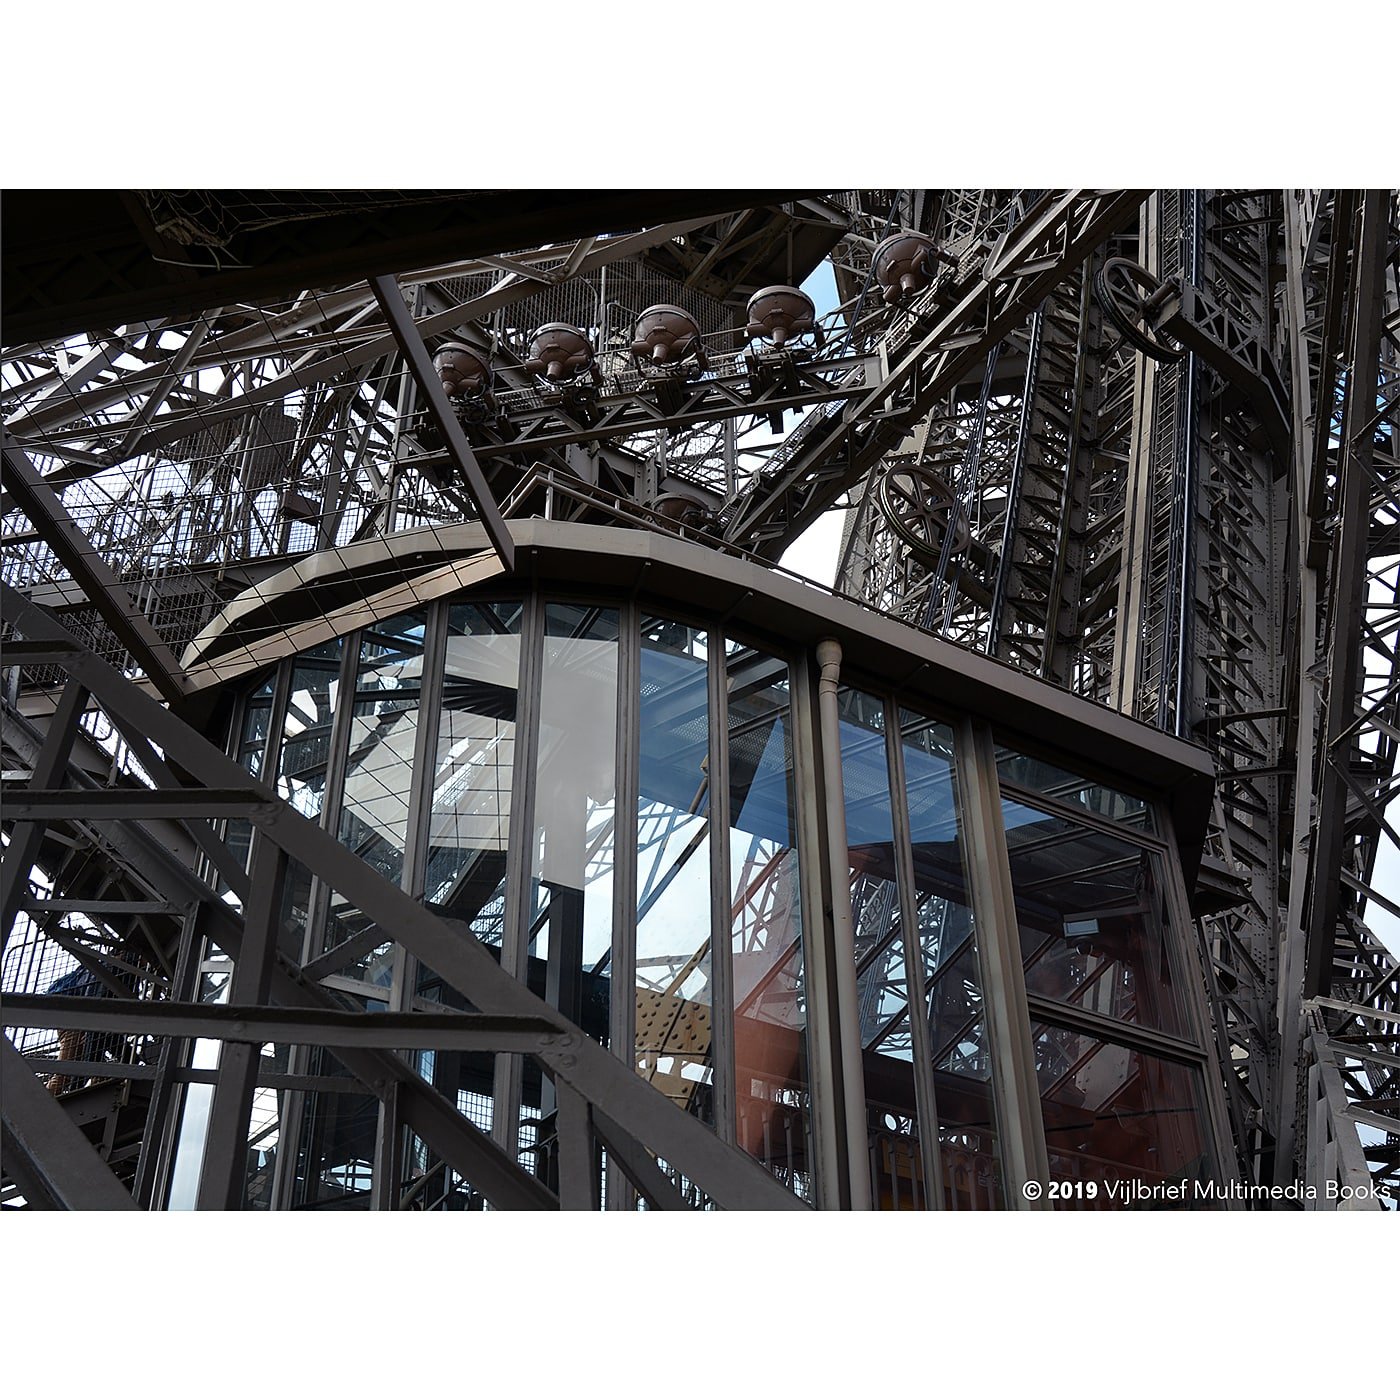 Frankrijk, Parijs. De Eiffeltoren: Mijn smeedijzeren liefde.